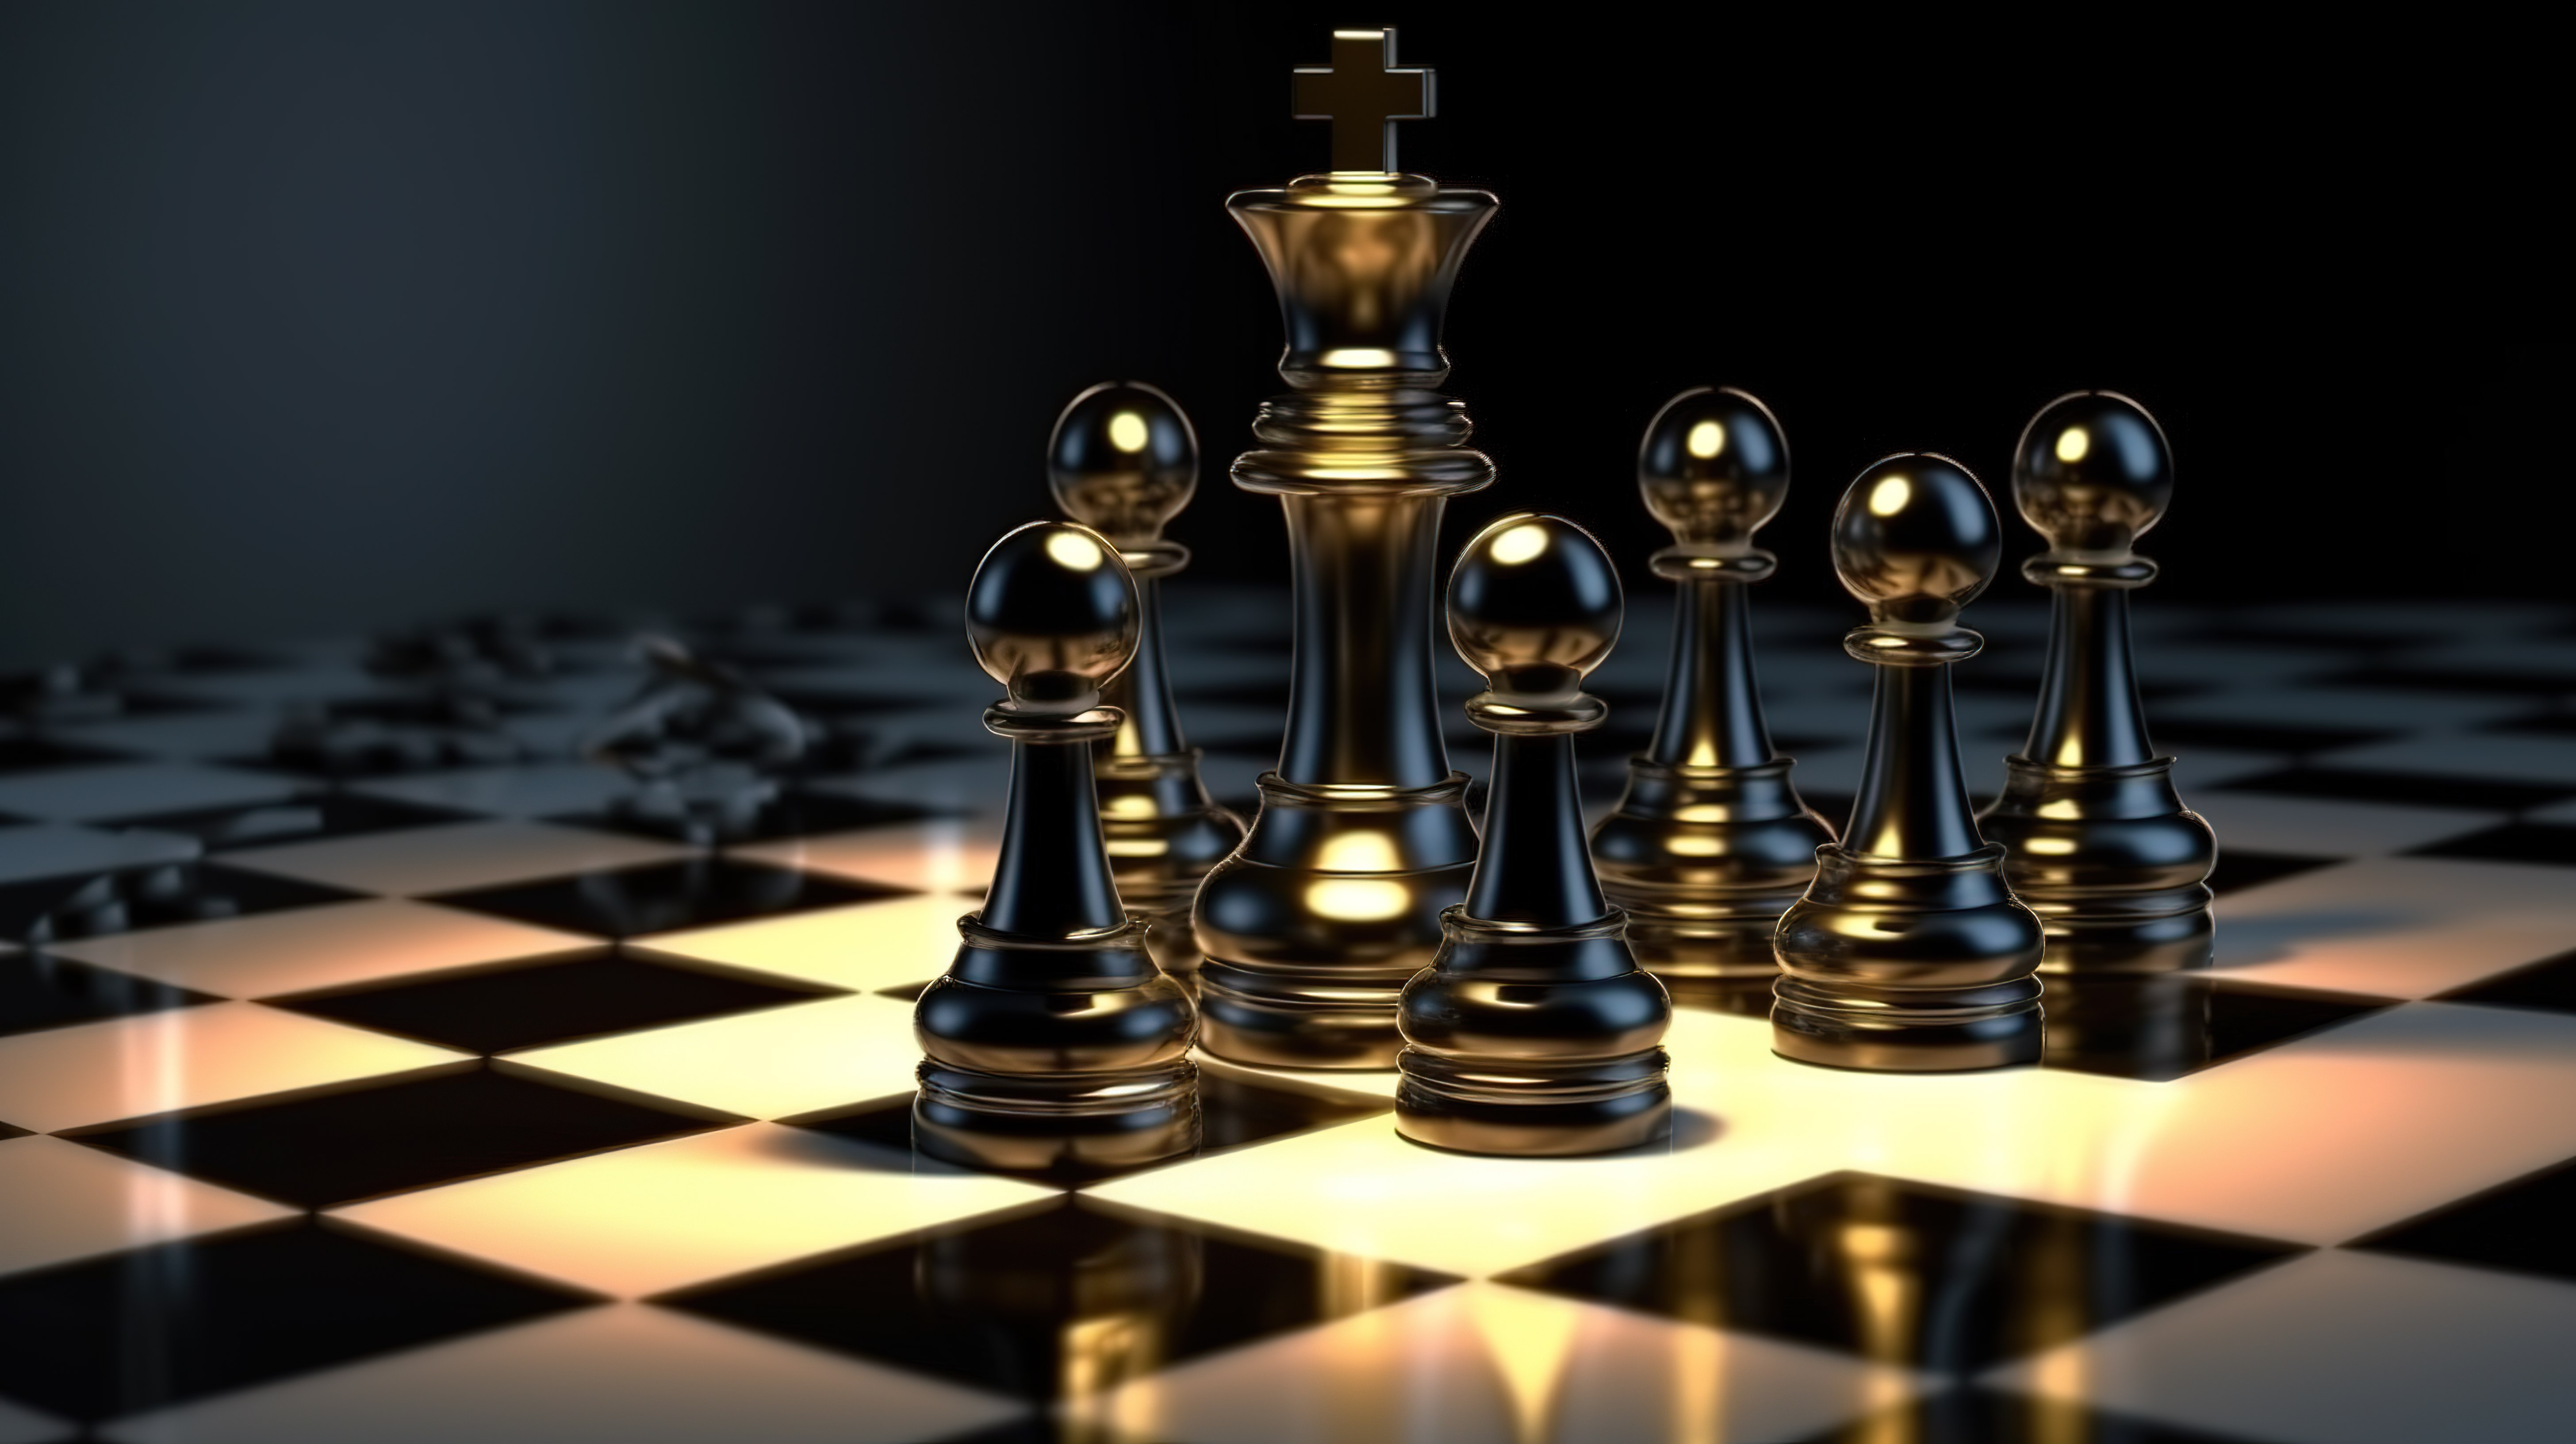 光芒四射的国际象棋国王和黑暗的棋子象征着 3D 模型中的优越性图片